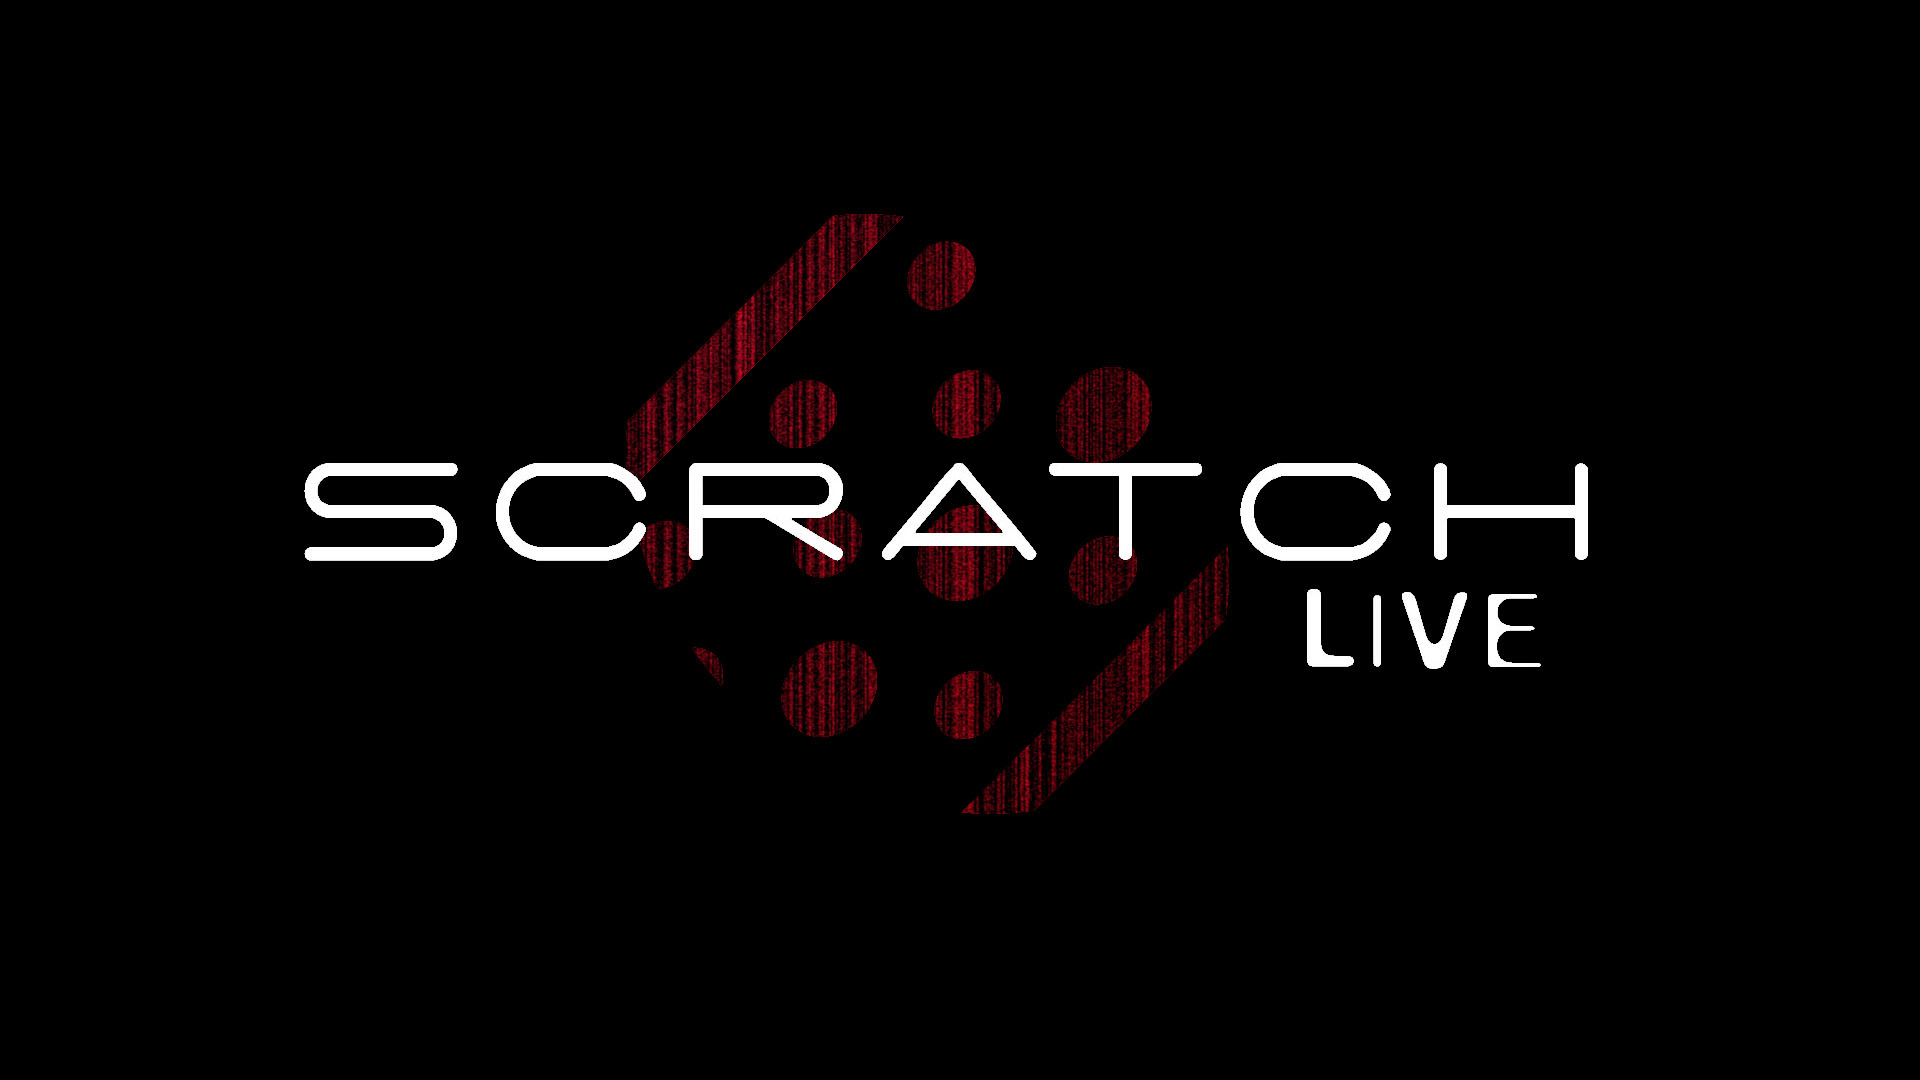 Serato Scratch Live Wallpaper